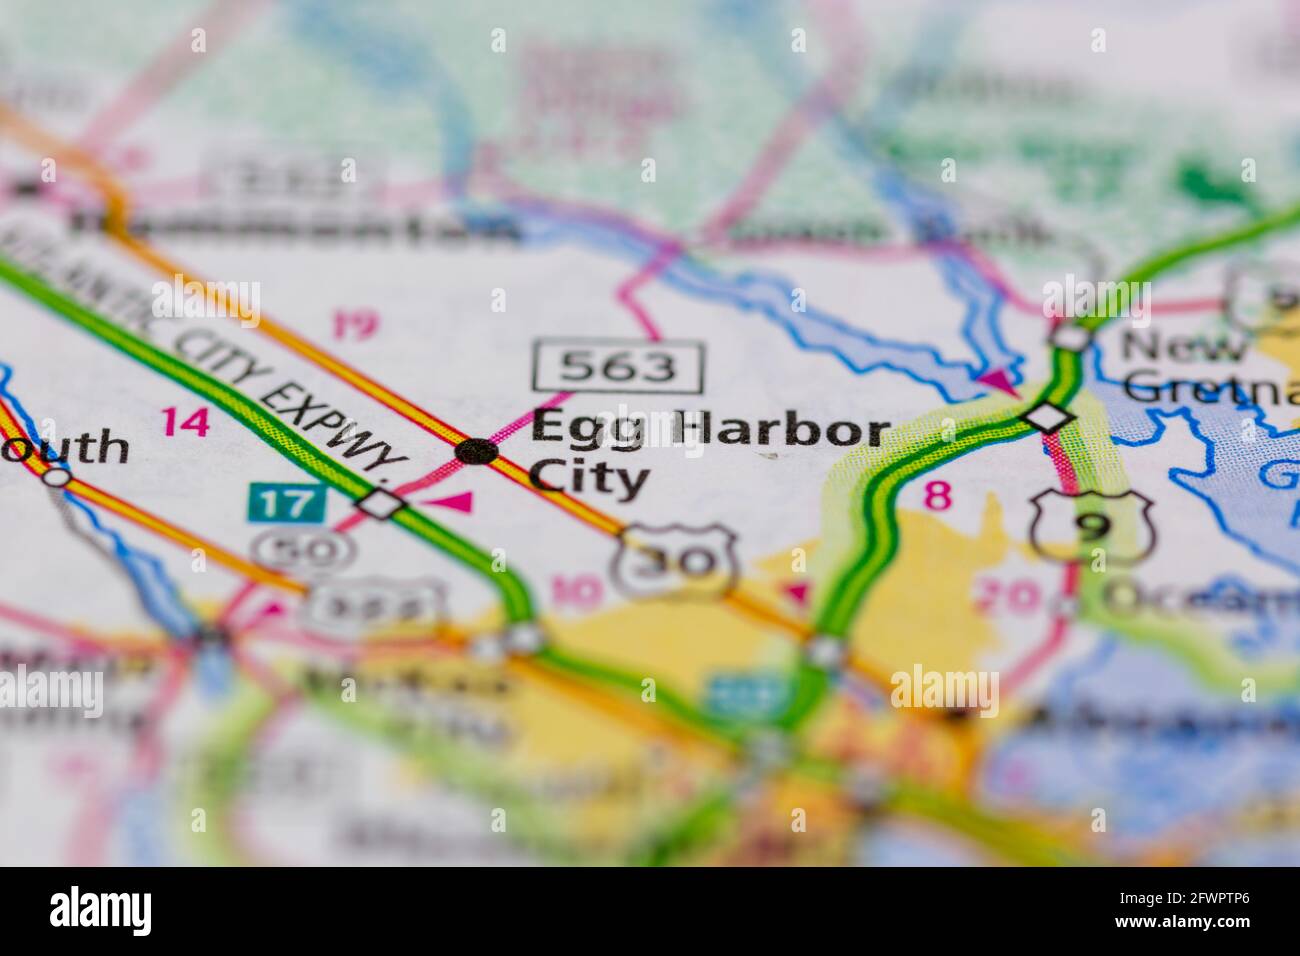 Egg Harbor City New Jersey USA auf einer Geographie dargestellt Karte oder Straßenkarte Stockfoto